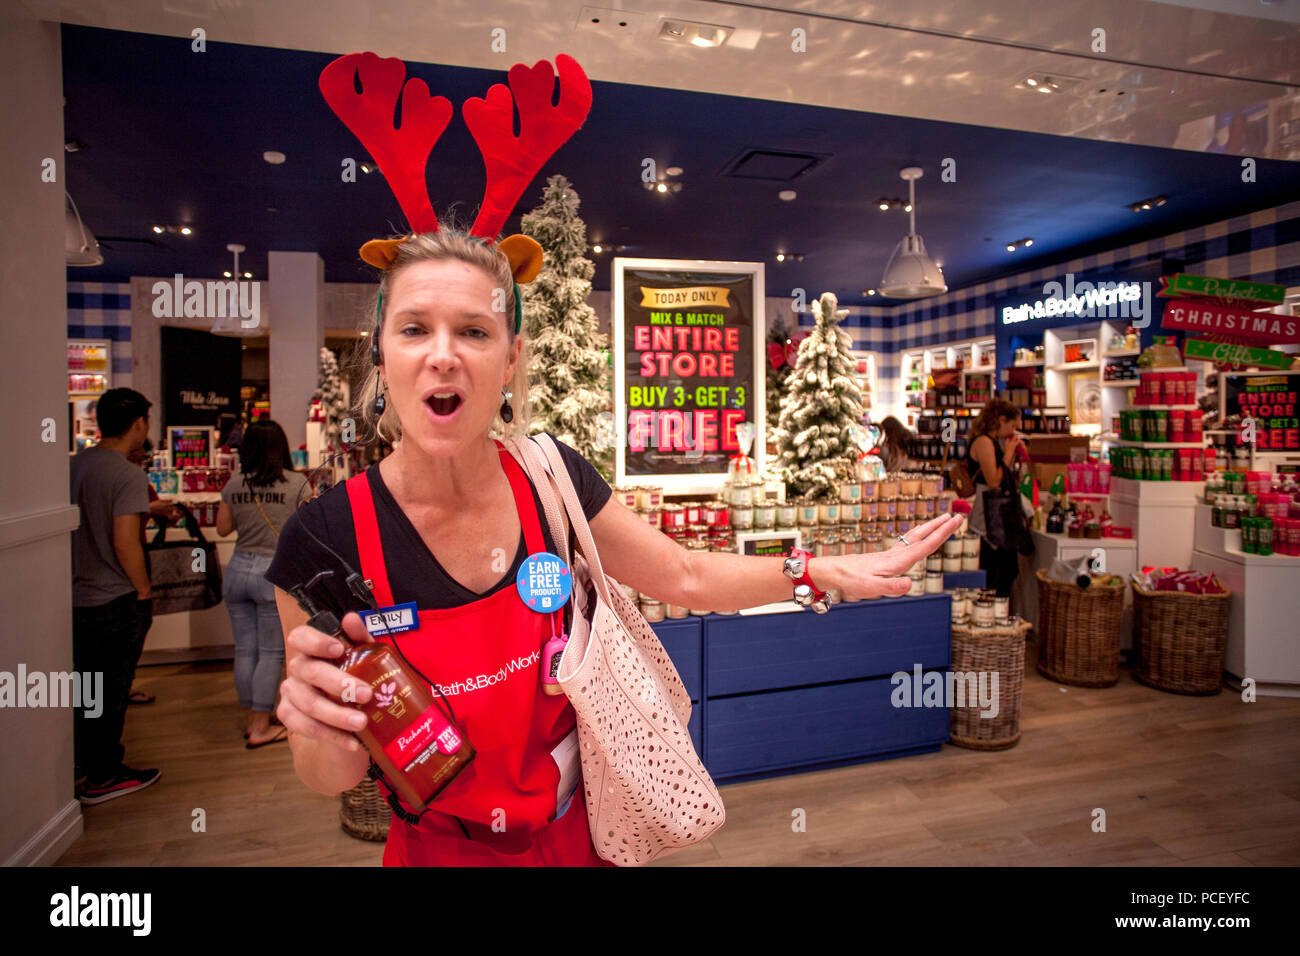 Wearing red reindeer antlers, une personne de ventes encourage les acheteurs vendredi noir avec une remise de prix à un des articles personnels dans un magasin Costa Mesa, CA, centre commercial. Banque D'Images